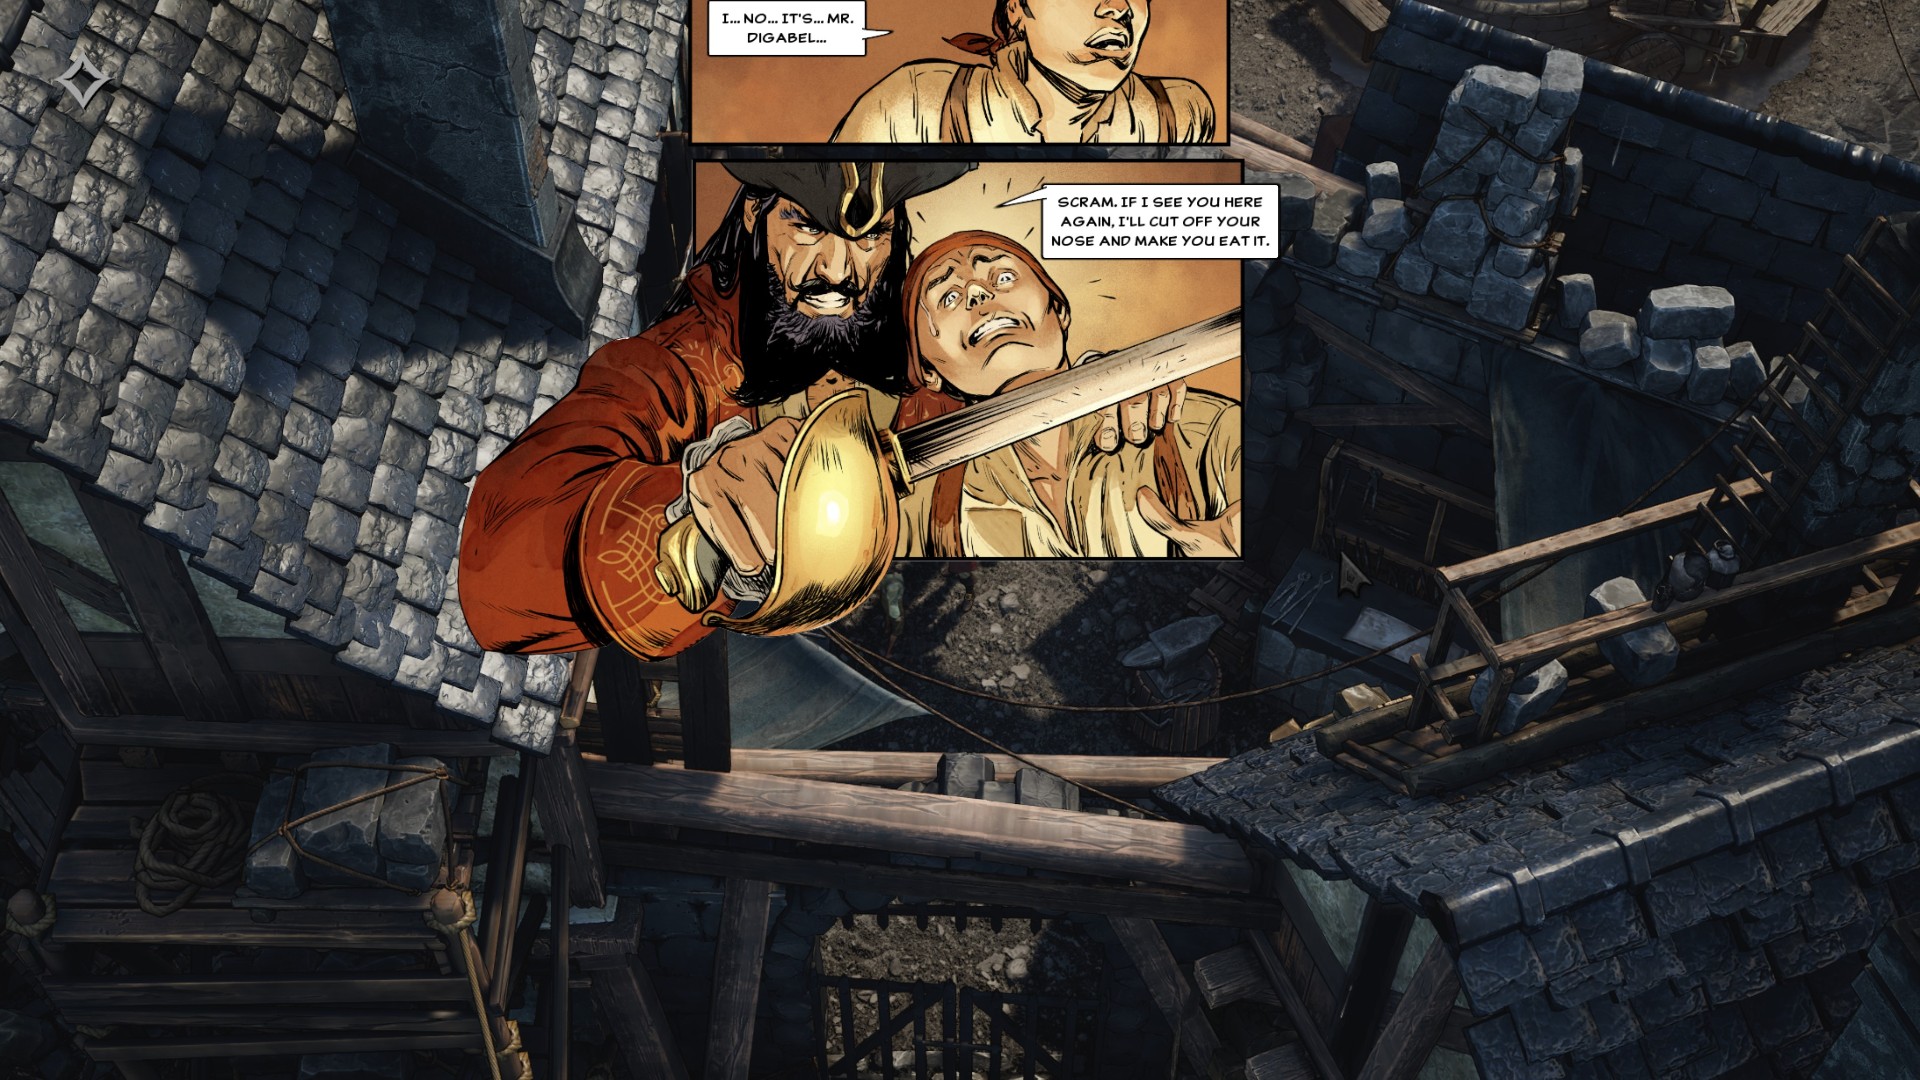 Flint Treasure of Oblivion Steam RPG: un panel de conversación del juego de rol y pirata de Steam Flint Treasure of Oblivion